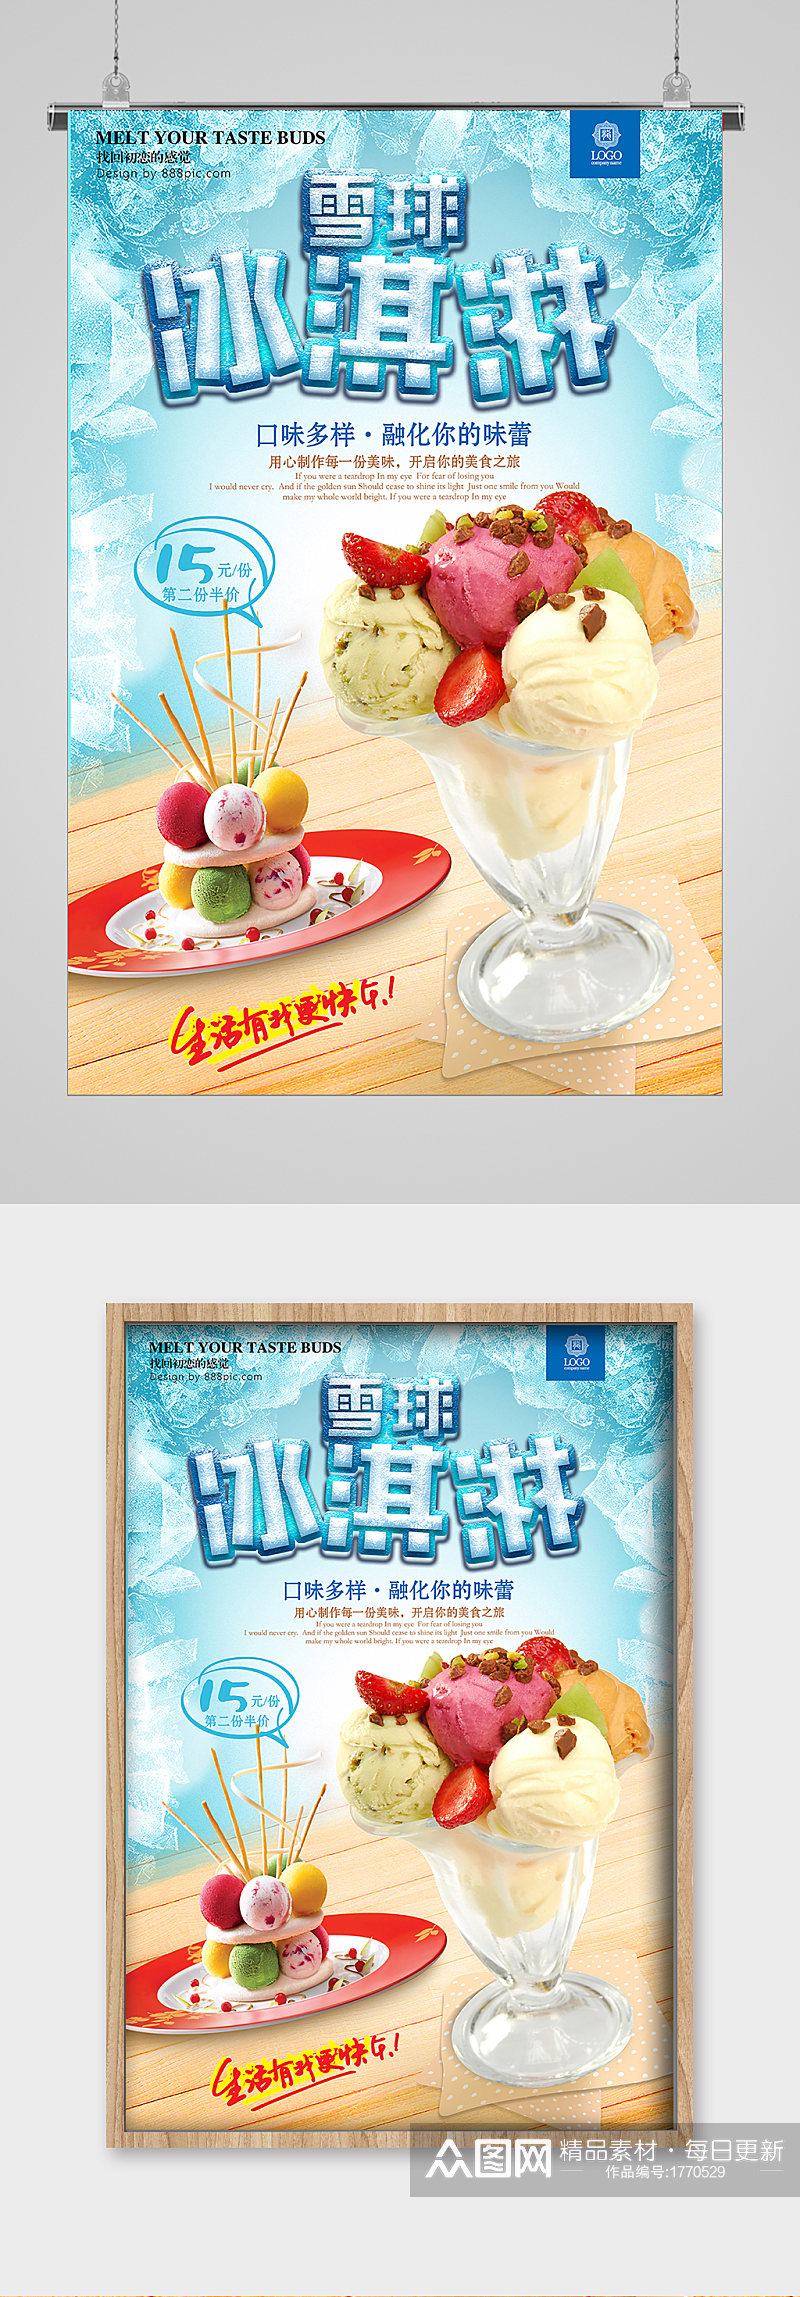 清爽夏日美味雪球冰淇淋海报素材